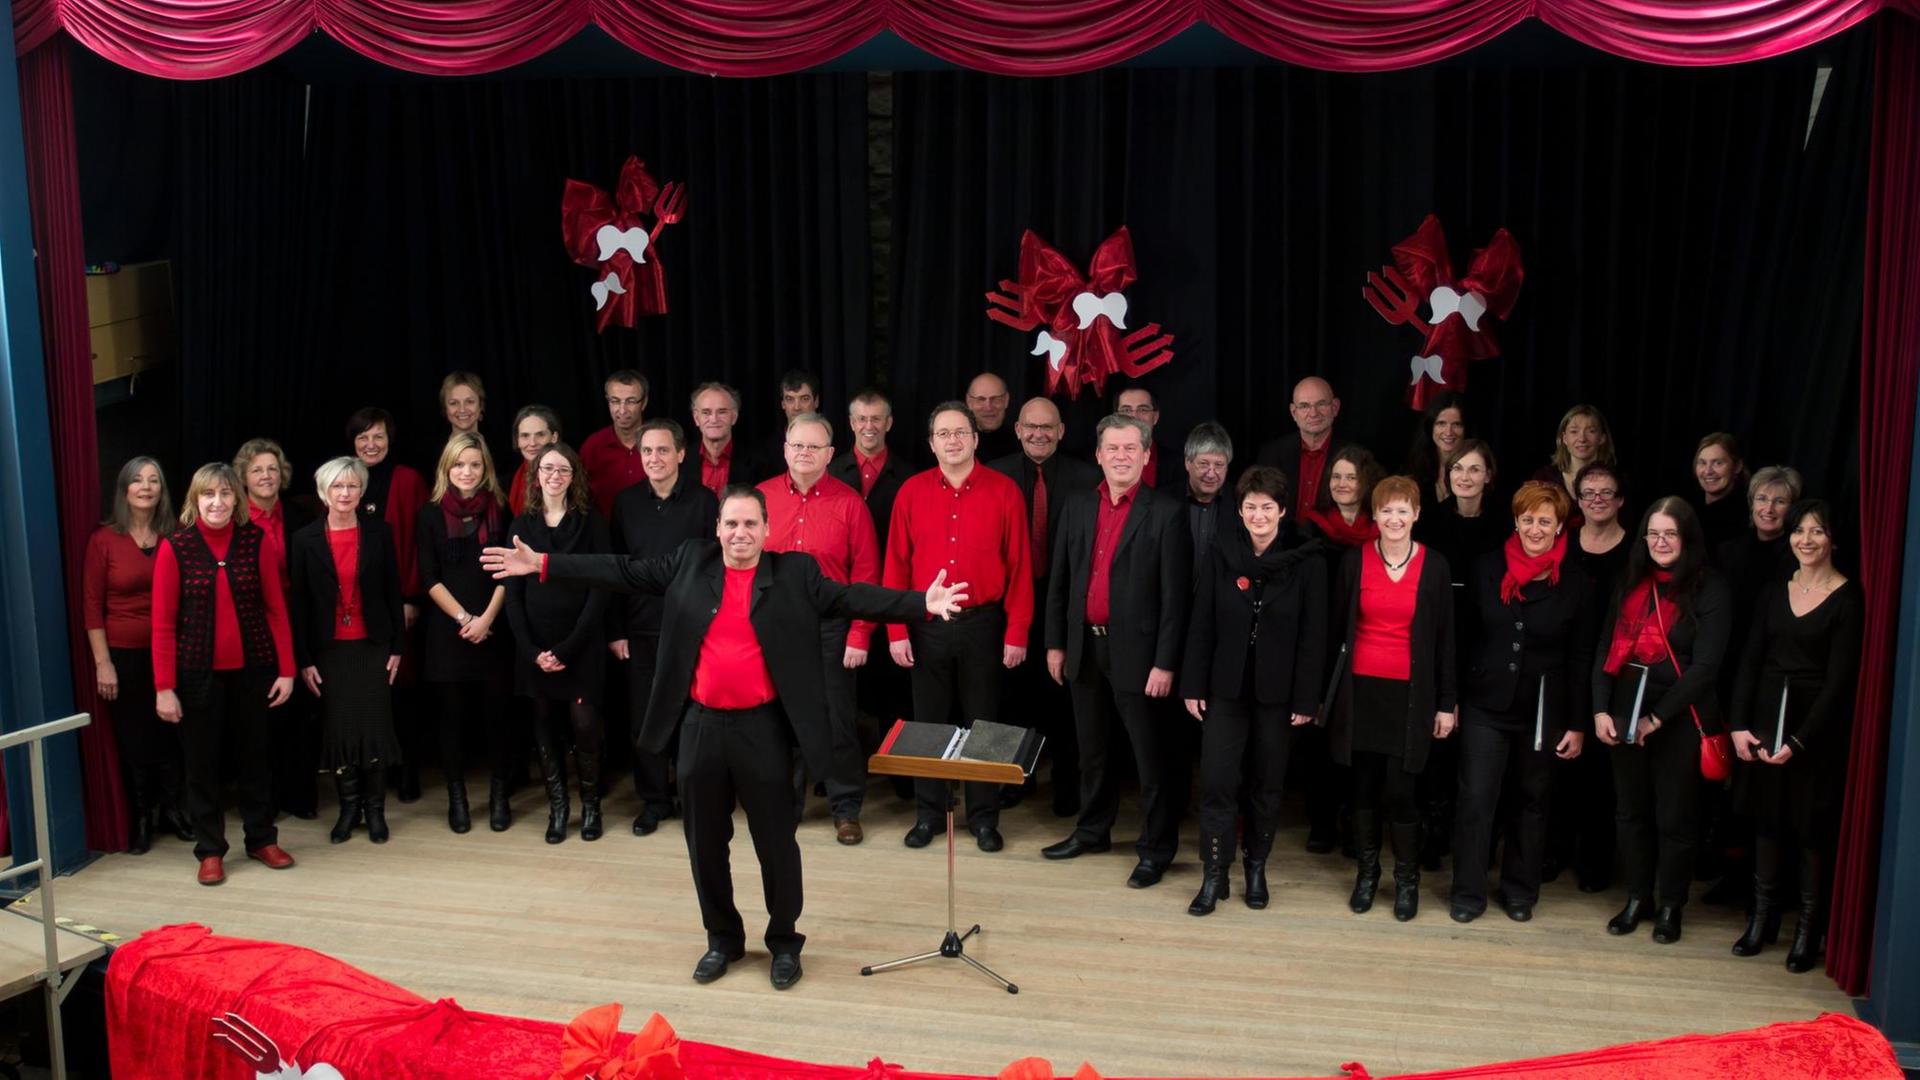 Der Chor in roter und schwarzer Kleidung auf einer Bühne.